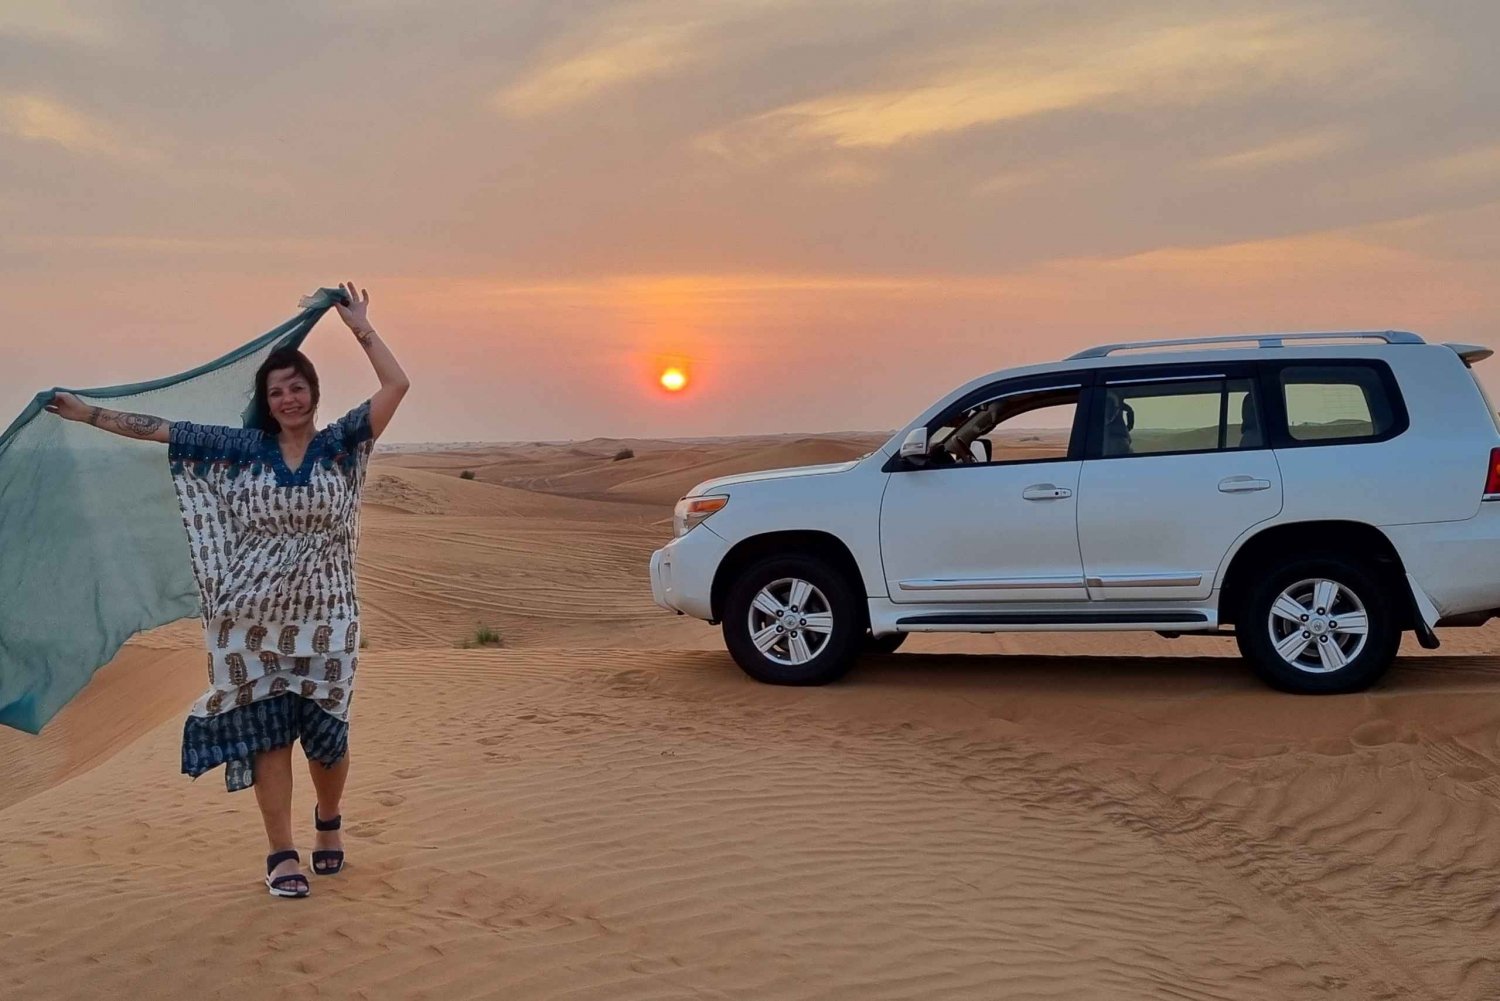 Excursión vespertina por el desierto con descenso de dunas y paseo en camello